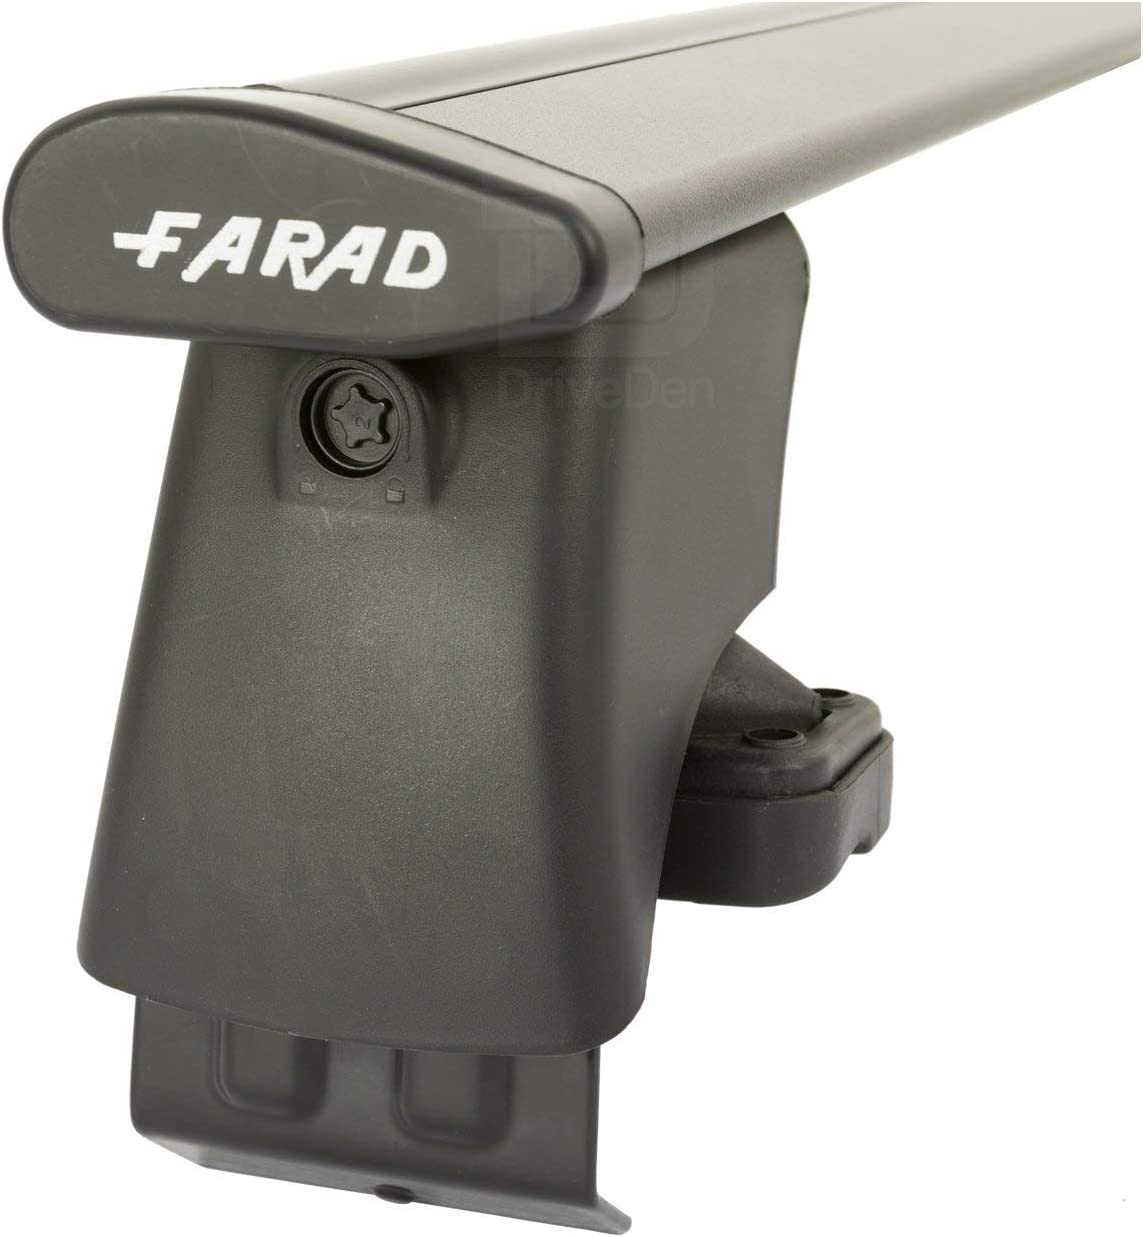 FARAD-Kit H2 per barre portatutto - Ford Fiesta 2008-2017 (senza corrimano)